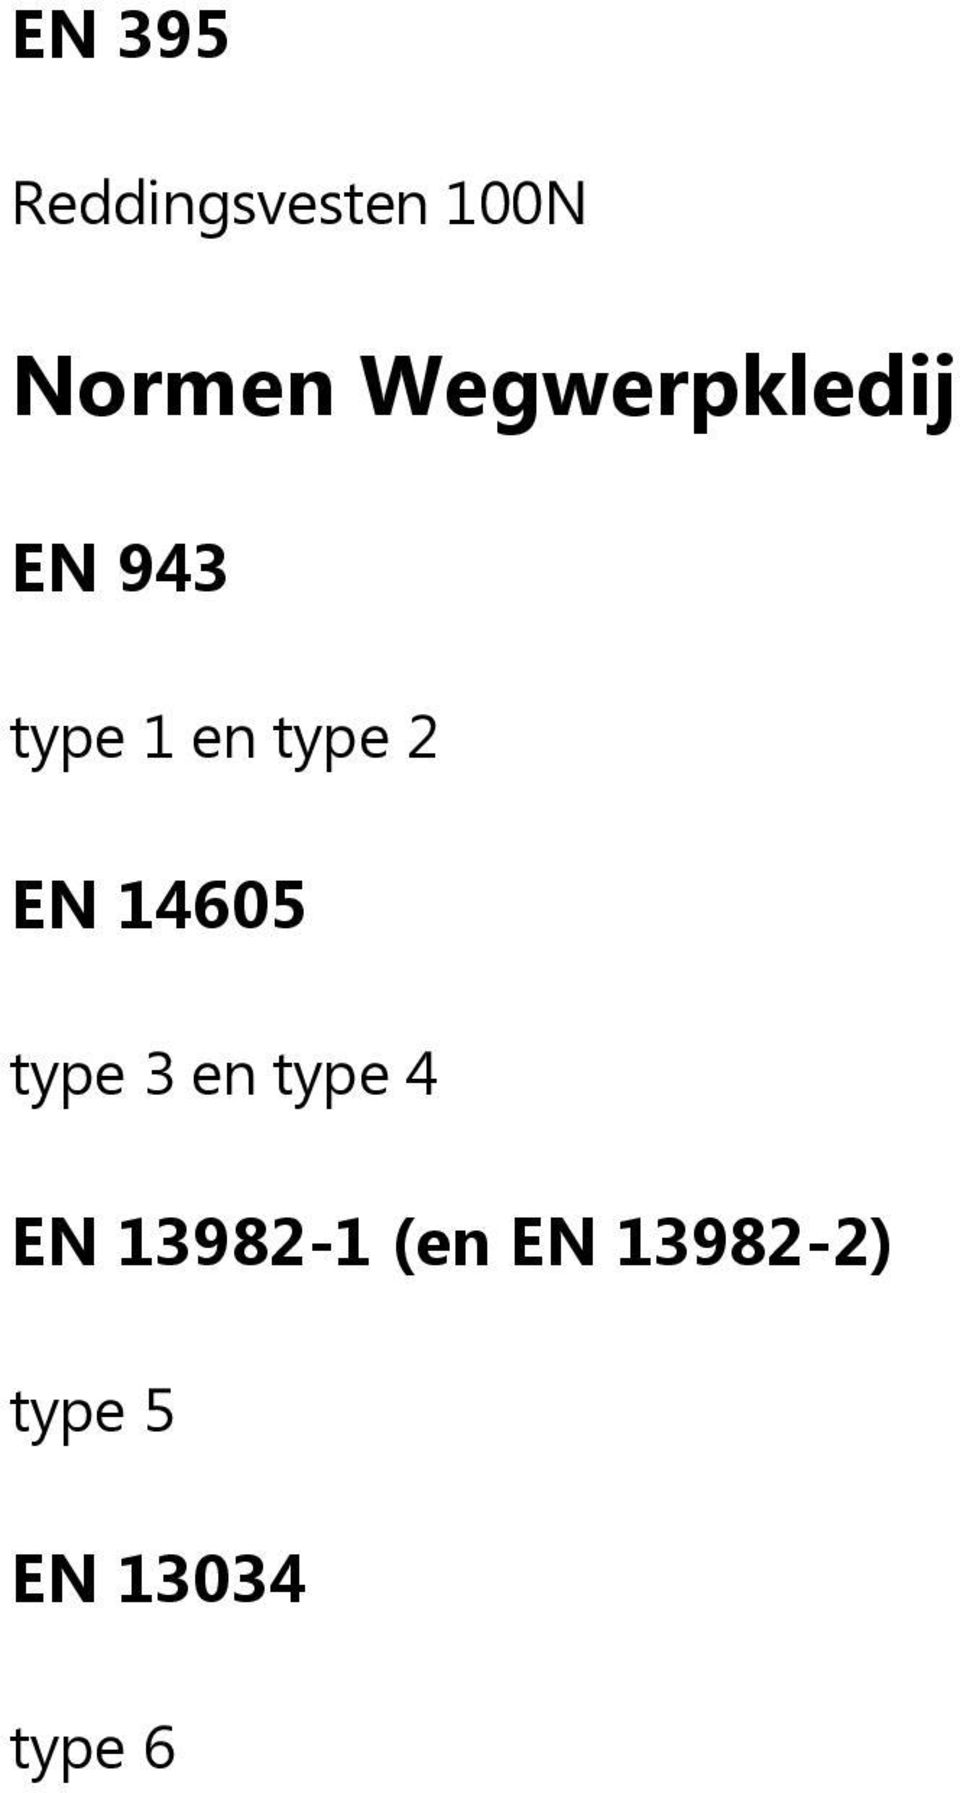 2 EN 14605 type 3 en type 4 EN